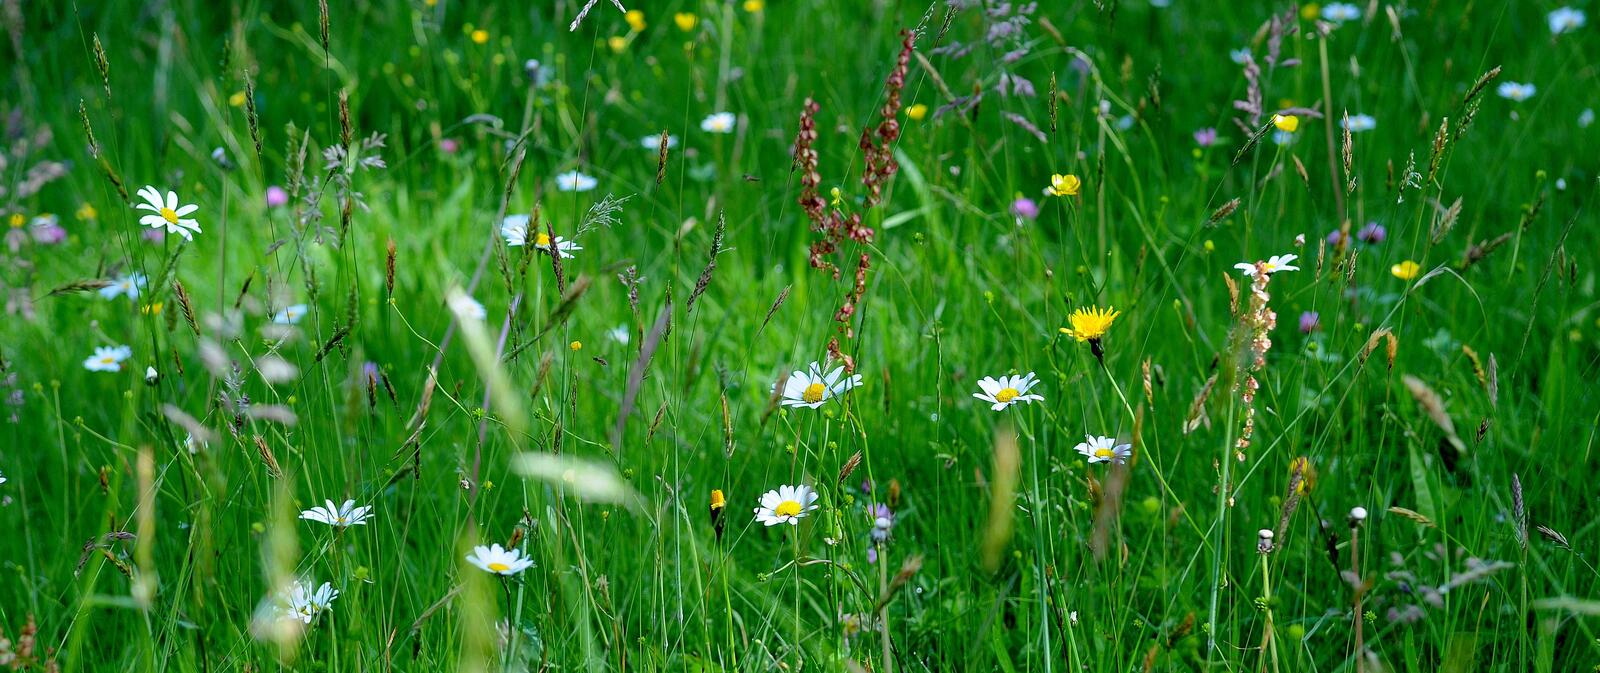 Wallpapers nature green grass grass on the desktop